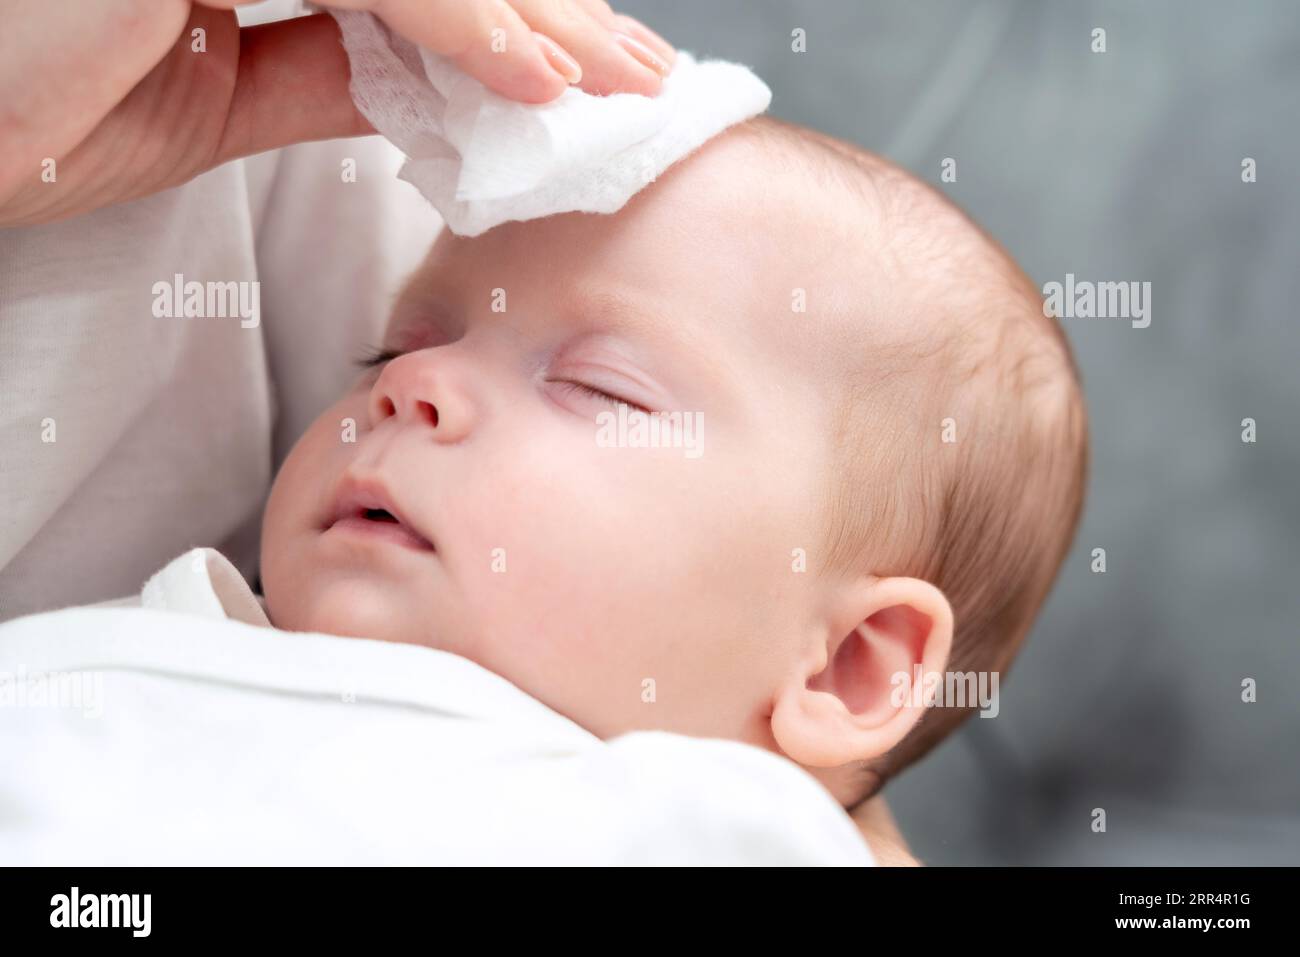 La lingette humide apporte un soulagement au nouveau-né, concept de l'instinct maternel pendant les problèmes de santé Banque D'Images